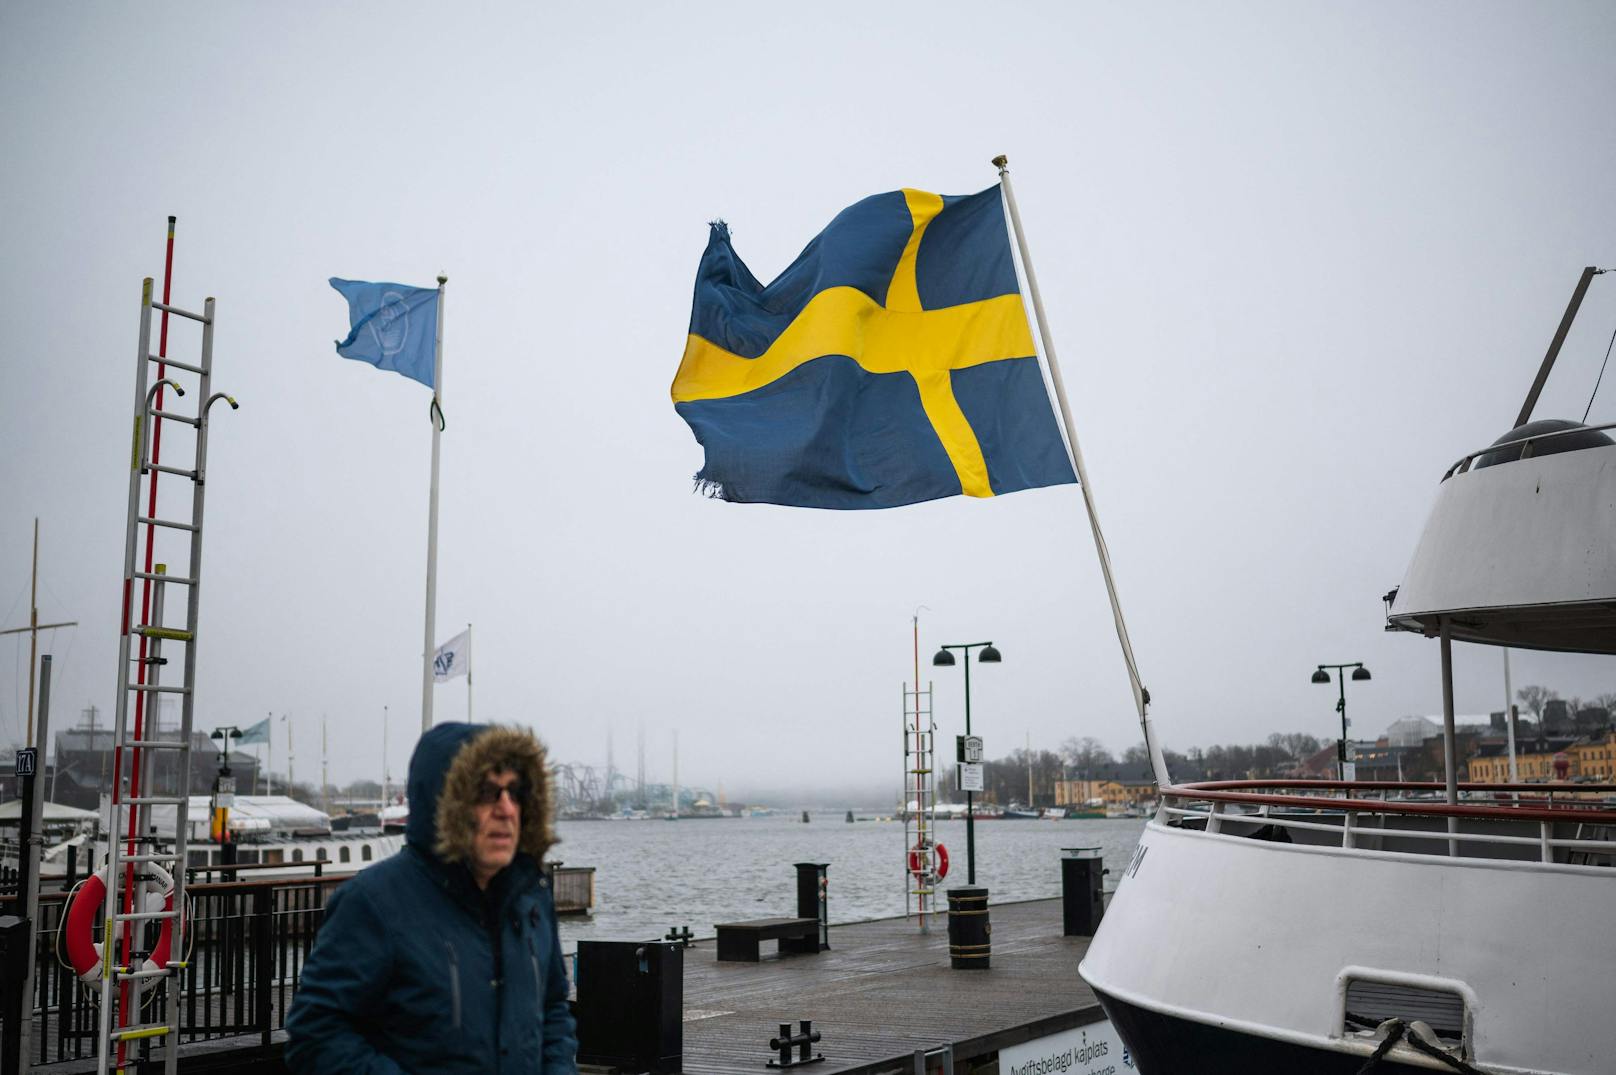 "Angriff auf Schweden kann nicht ausgeschlossen werden"